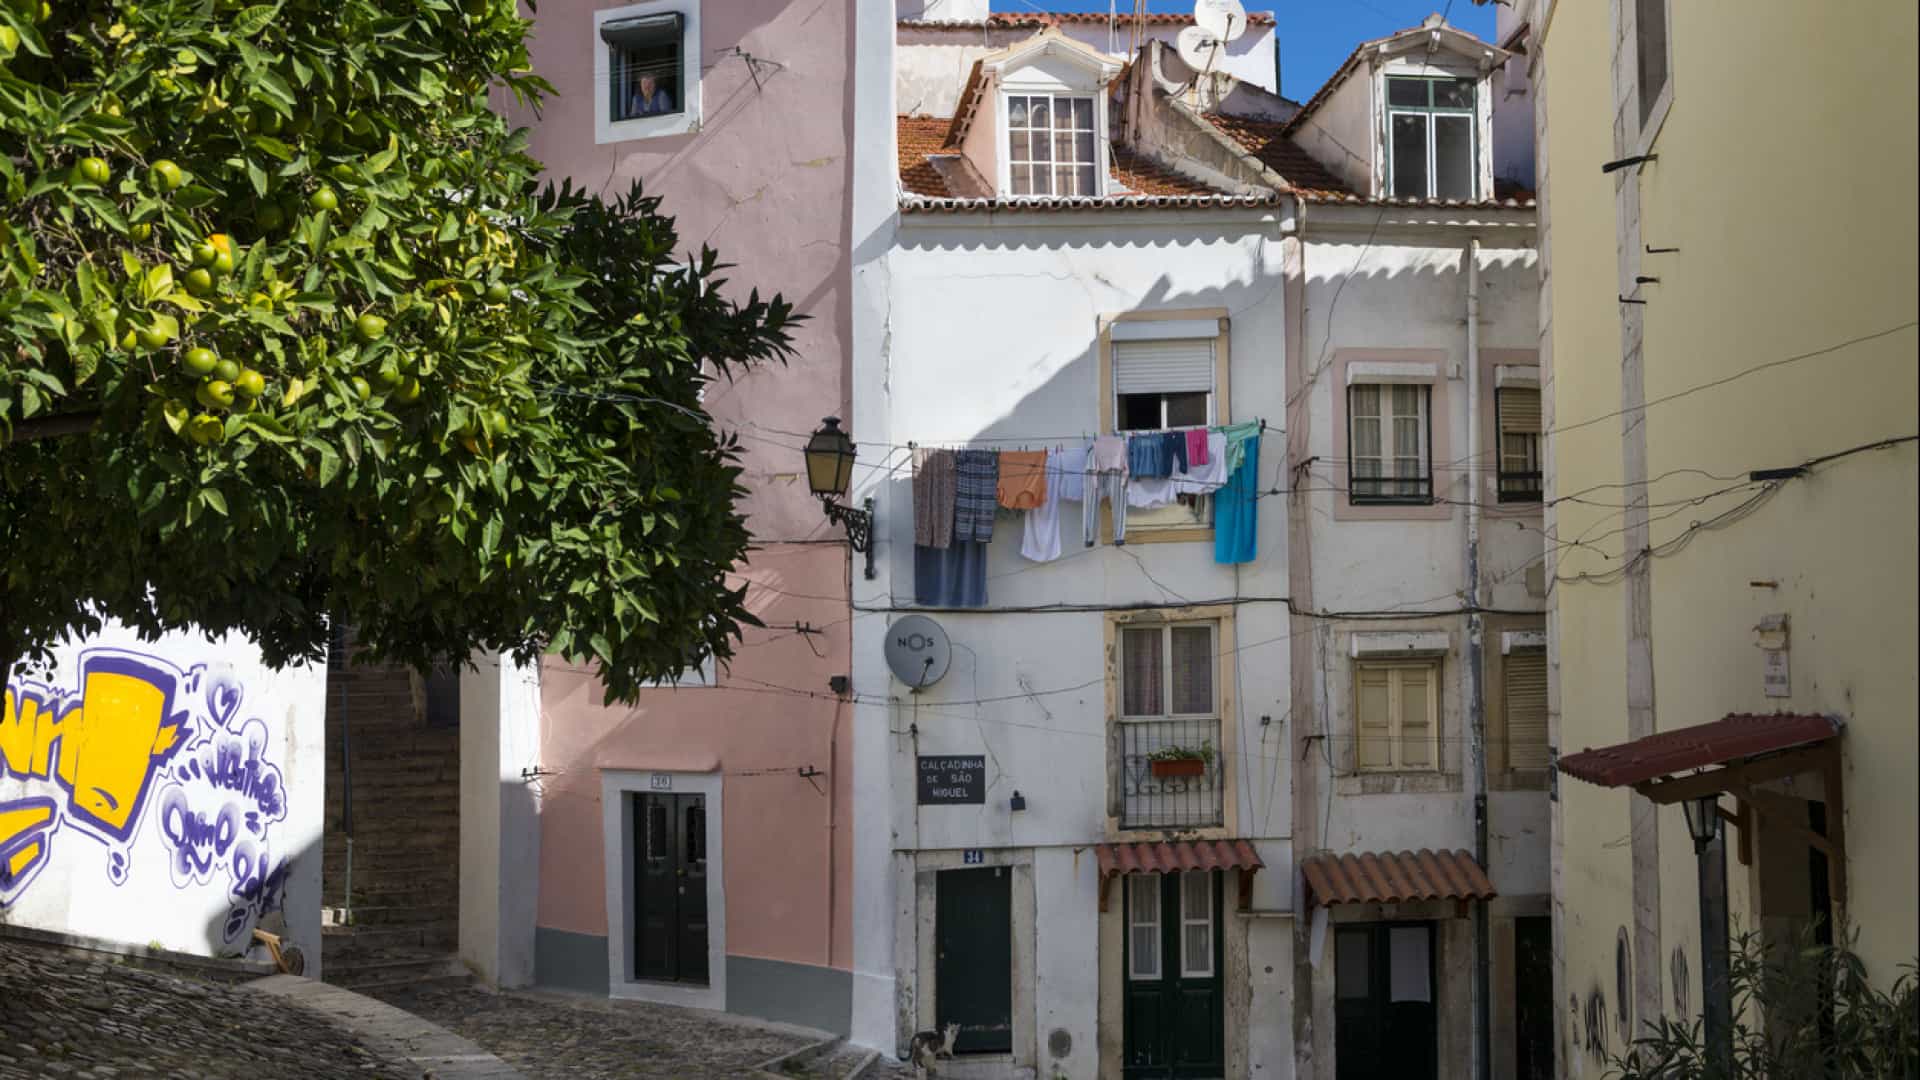 Pobreza em 28% dos concelhos portugueses